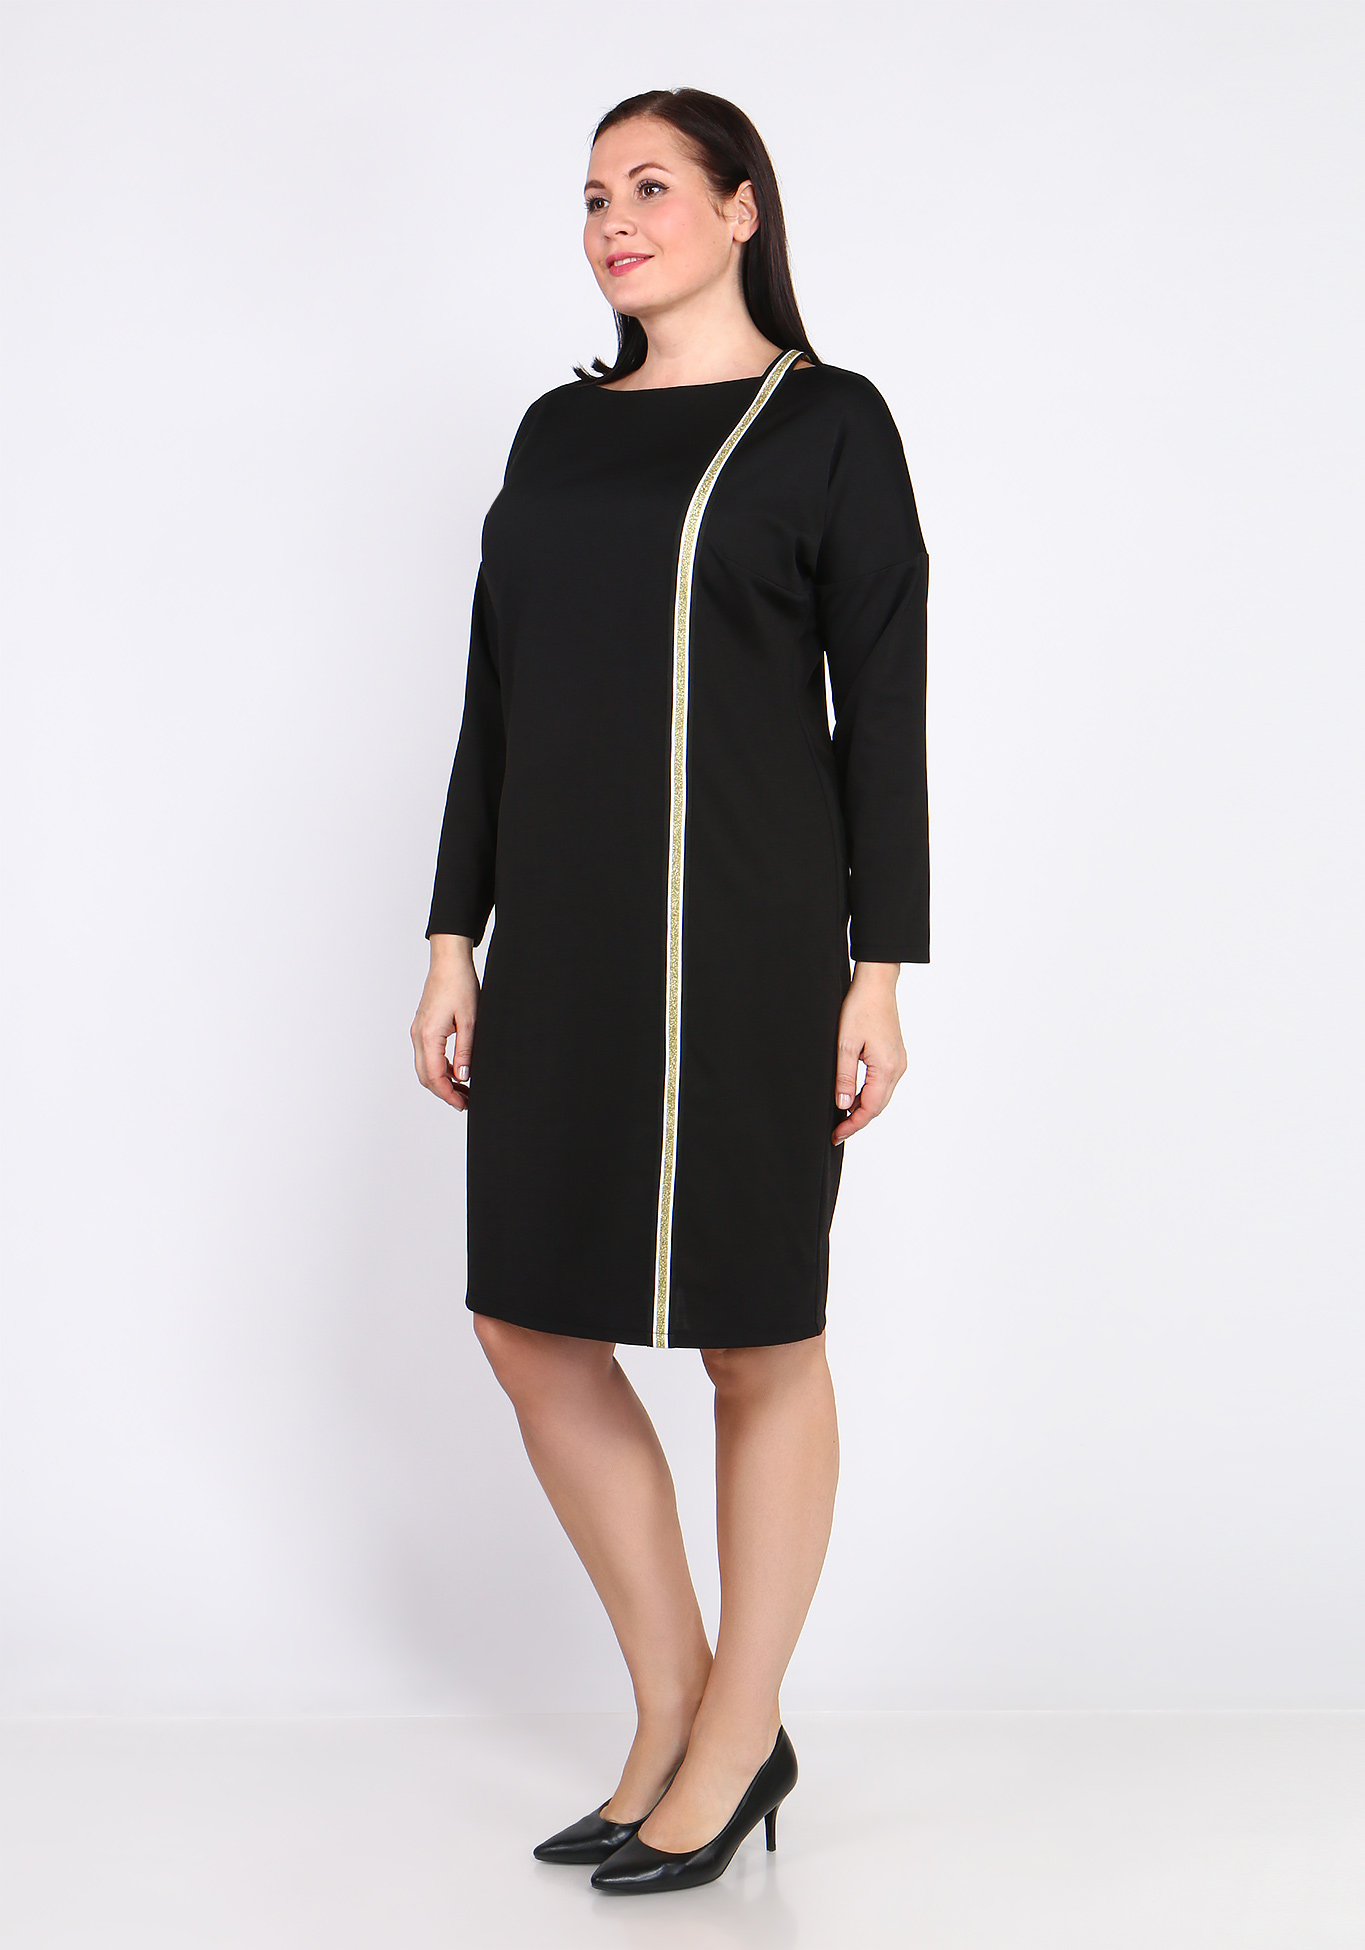 Платье с лампасом Bianka Modeno, размер 48, цвет чёрный - фото 3